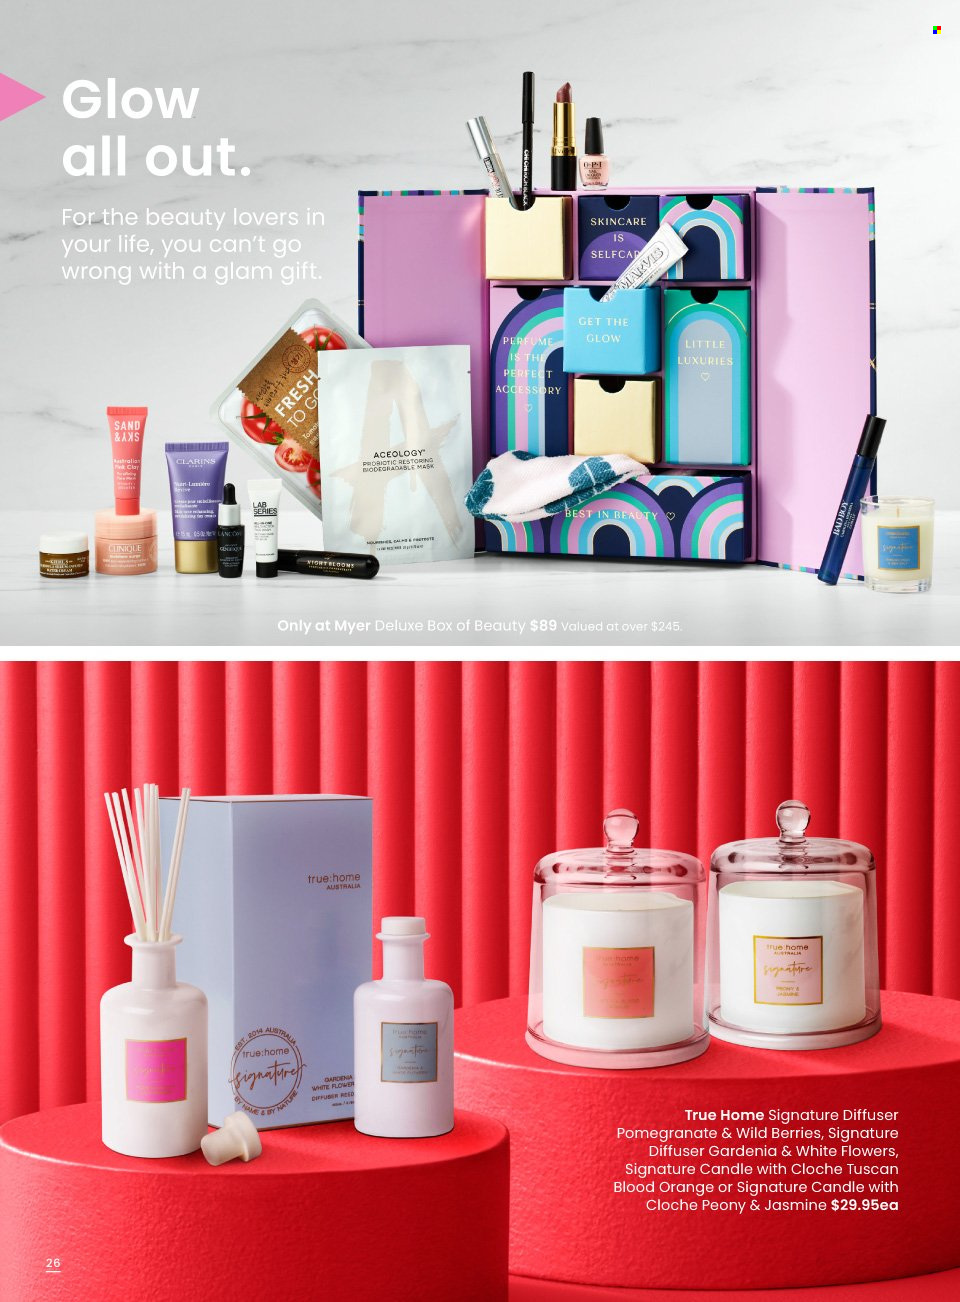 thumbnail - Myer Catalogue - Sales products - Clinique, eau de parfum, candle, diffuser. Page 26.